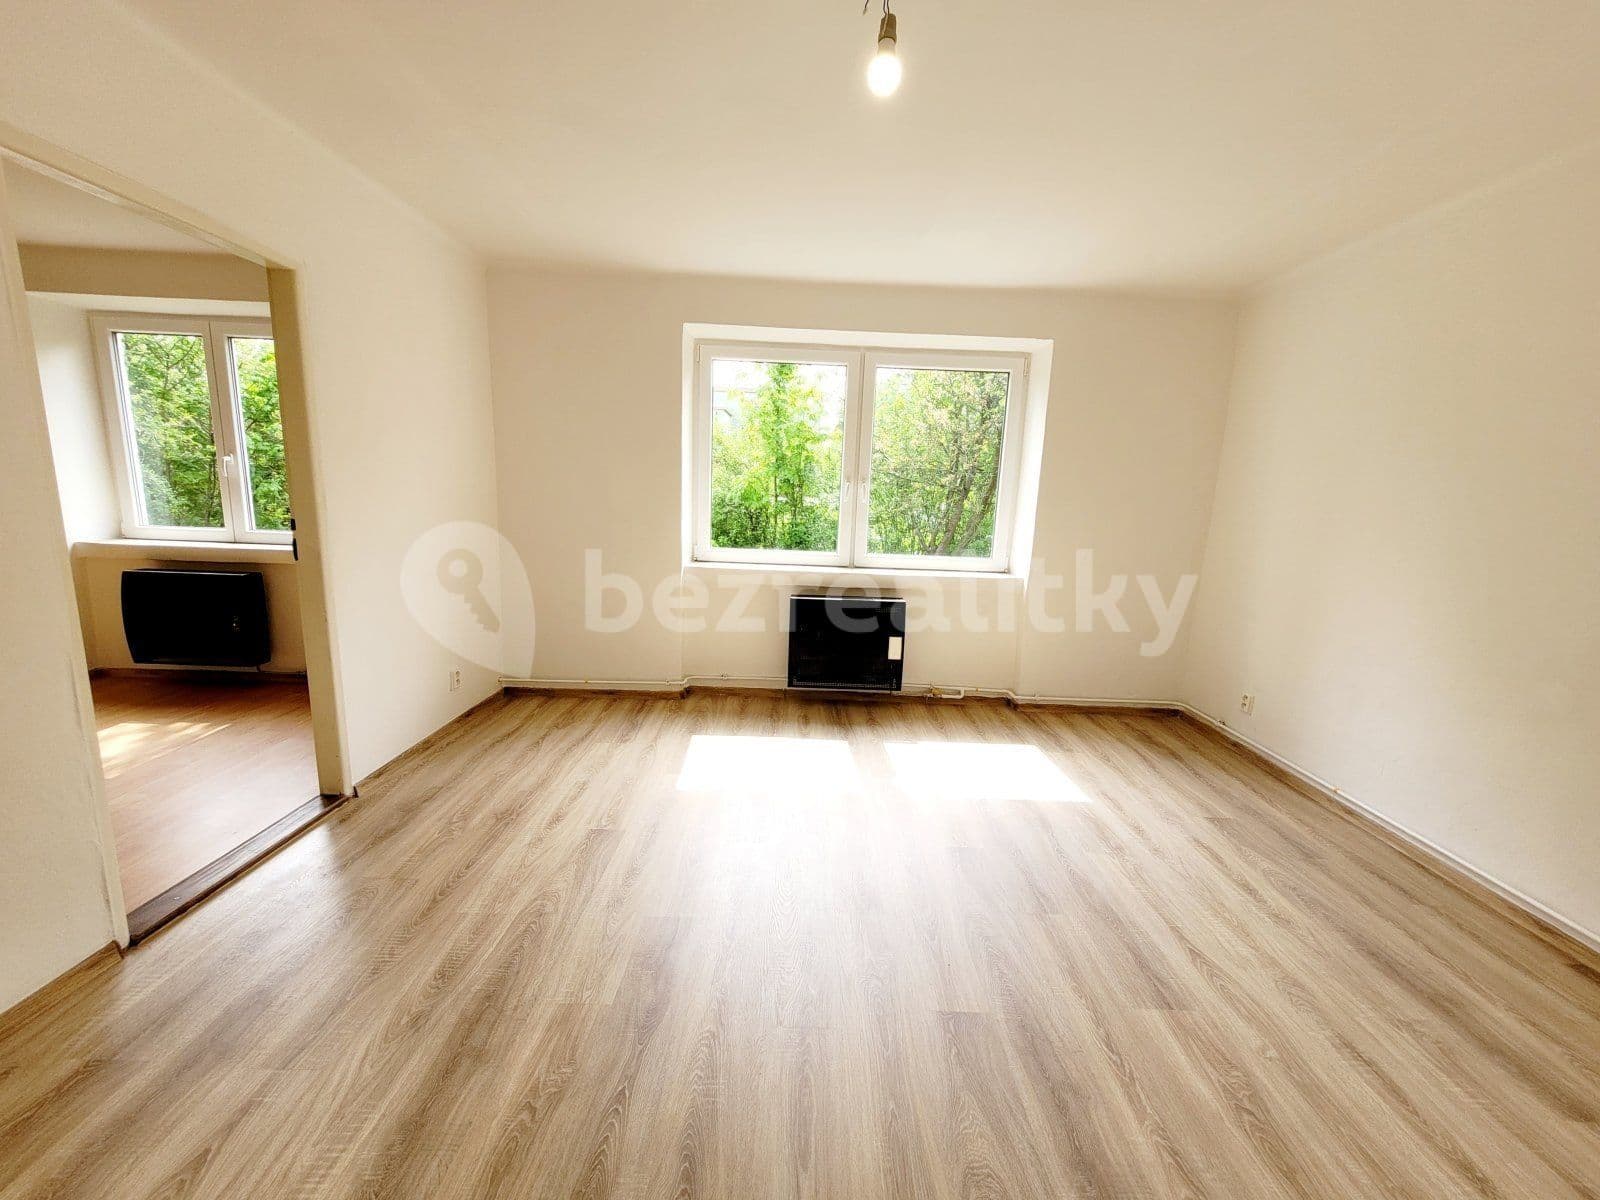 2 bedroom flat to rent, 55 m², Školní, Havířov, Moravskoslezský Region